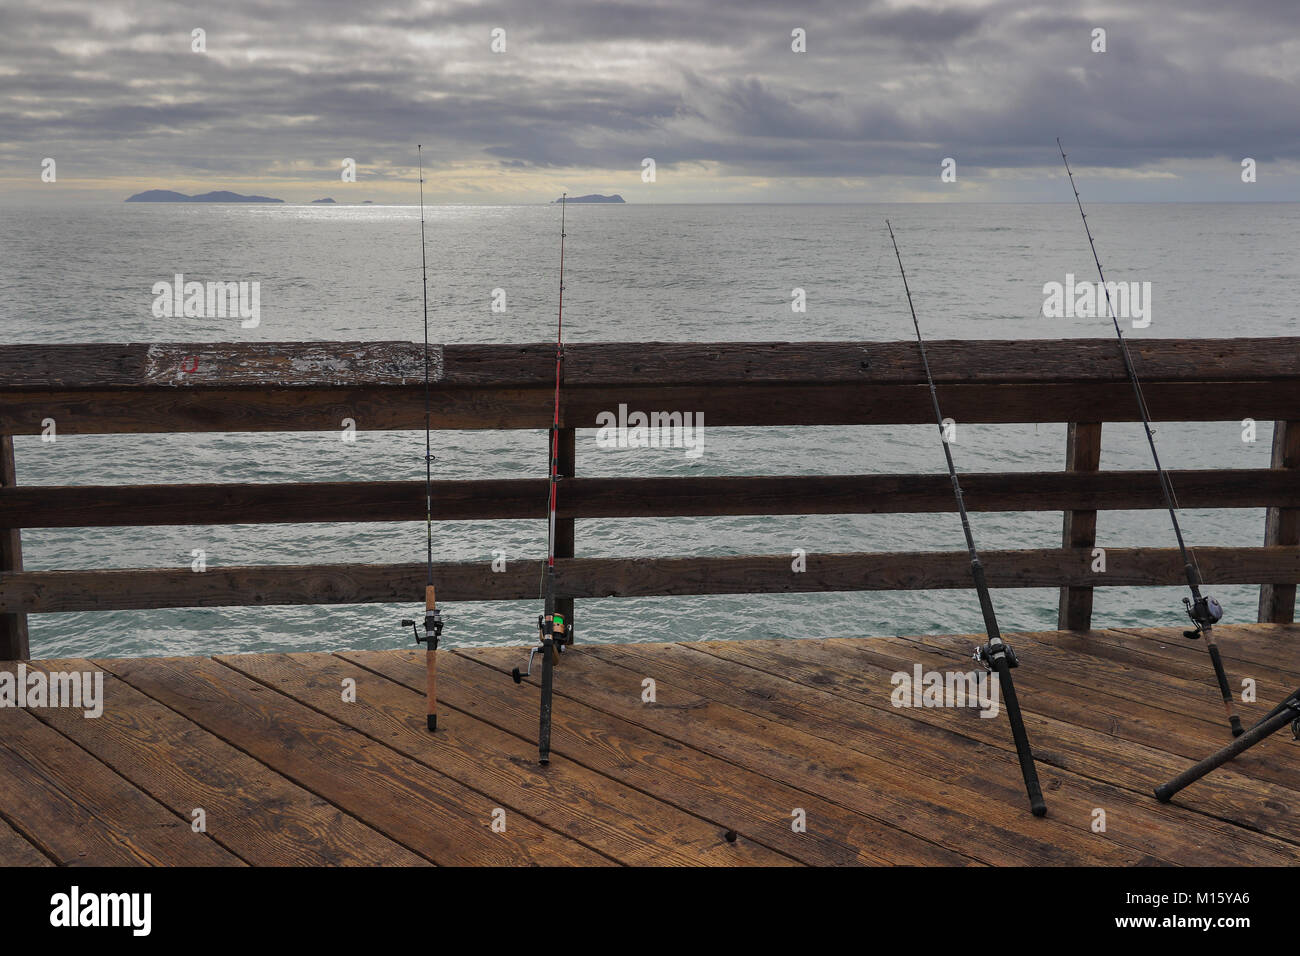 Quattro poli di pesca in appoggio sulla ringhiera della Imperial Beach Pier in California il giorno nuvoloso, l'Oceano Pacifico e le isole di Coronado in background Foto Stock